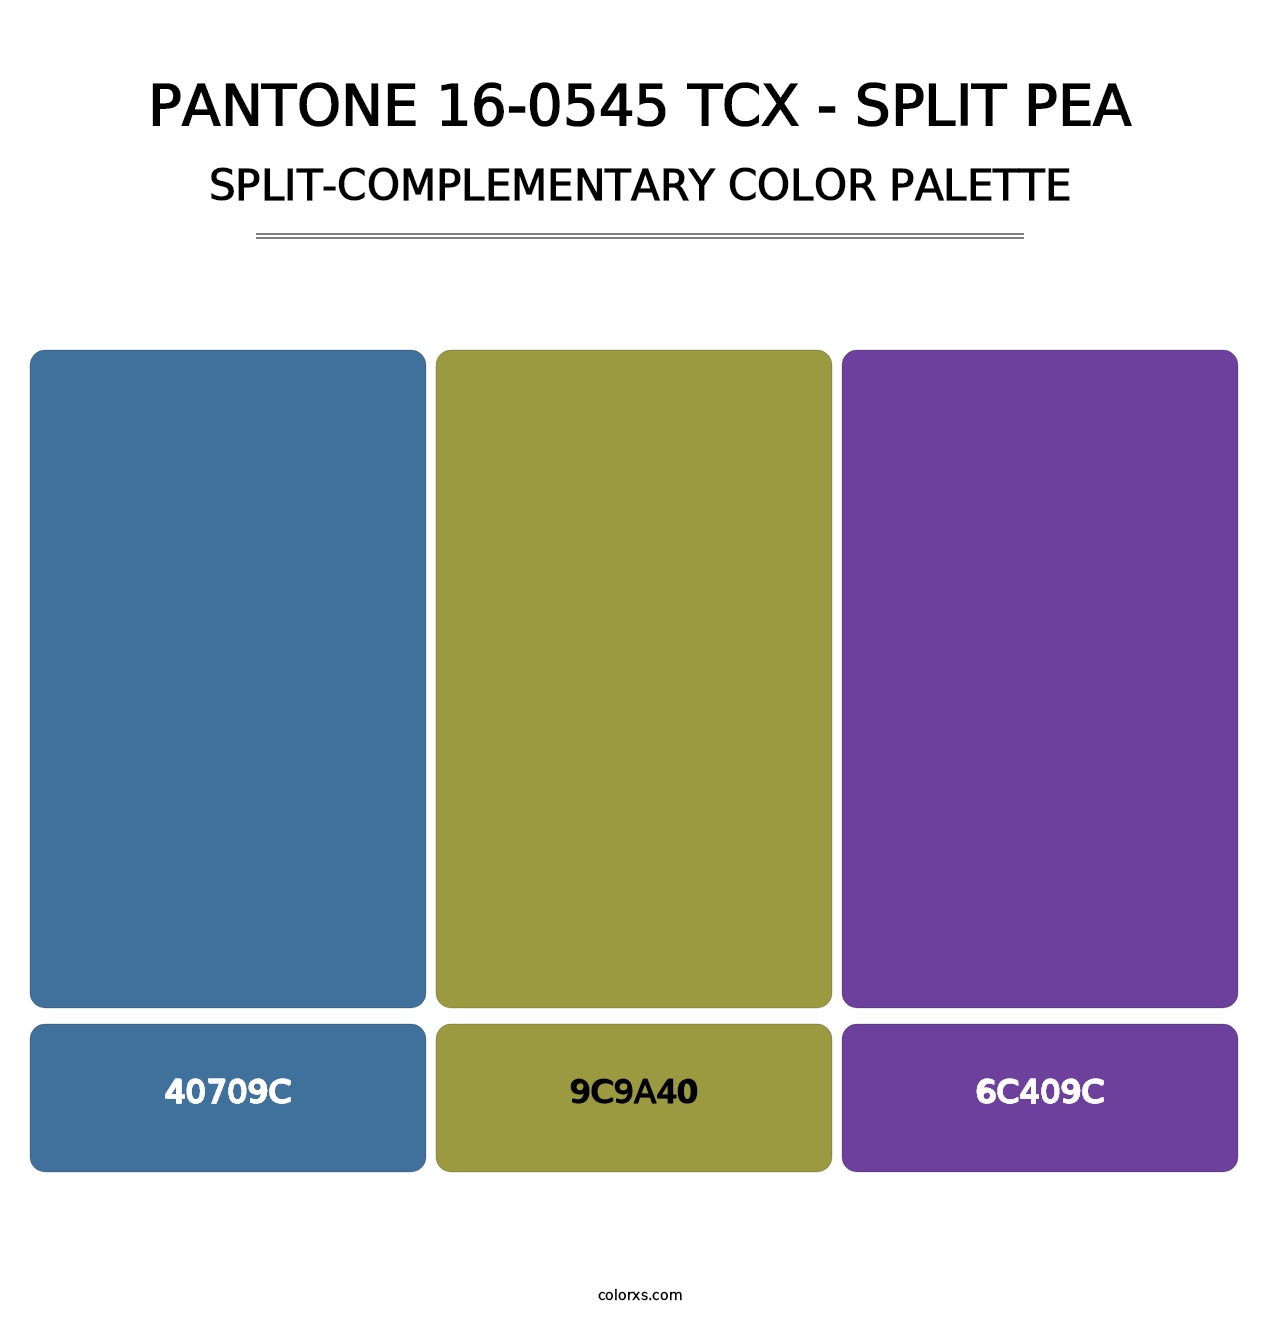 PANTONE 16-0545 TCX - Split Pea - Split-Complementary Color Palette